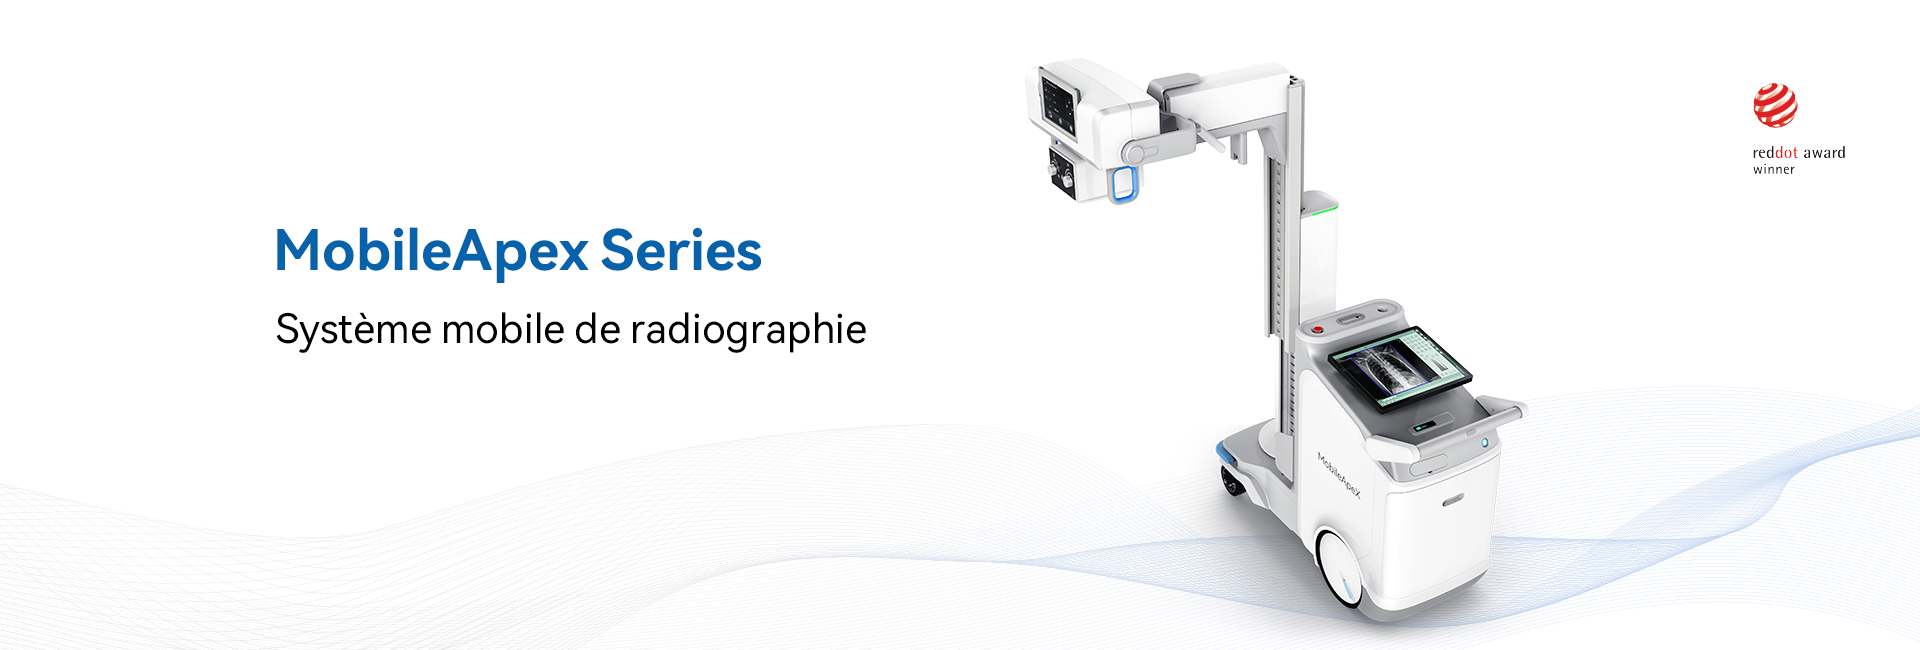 Une nouvelle ère de la radiographie mobile